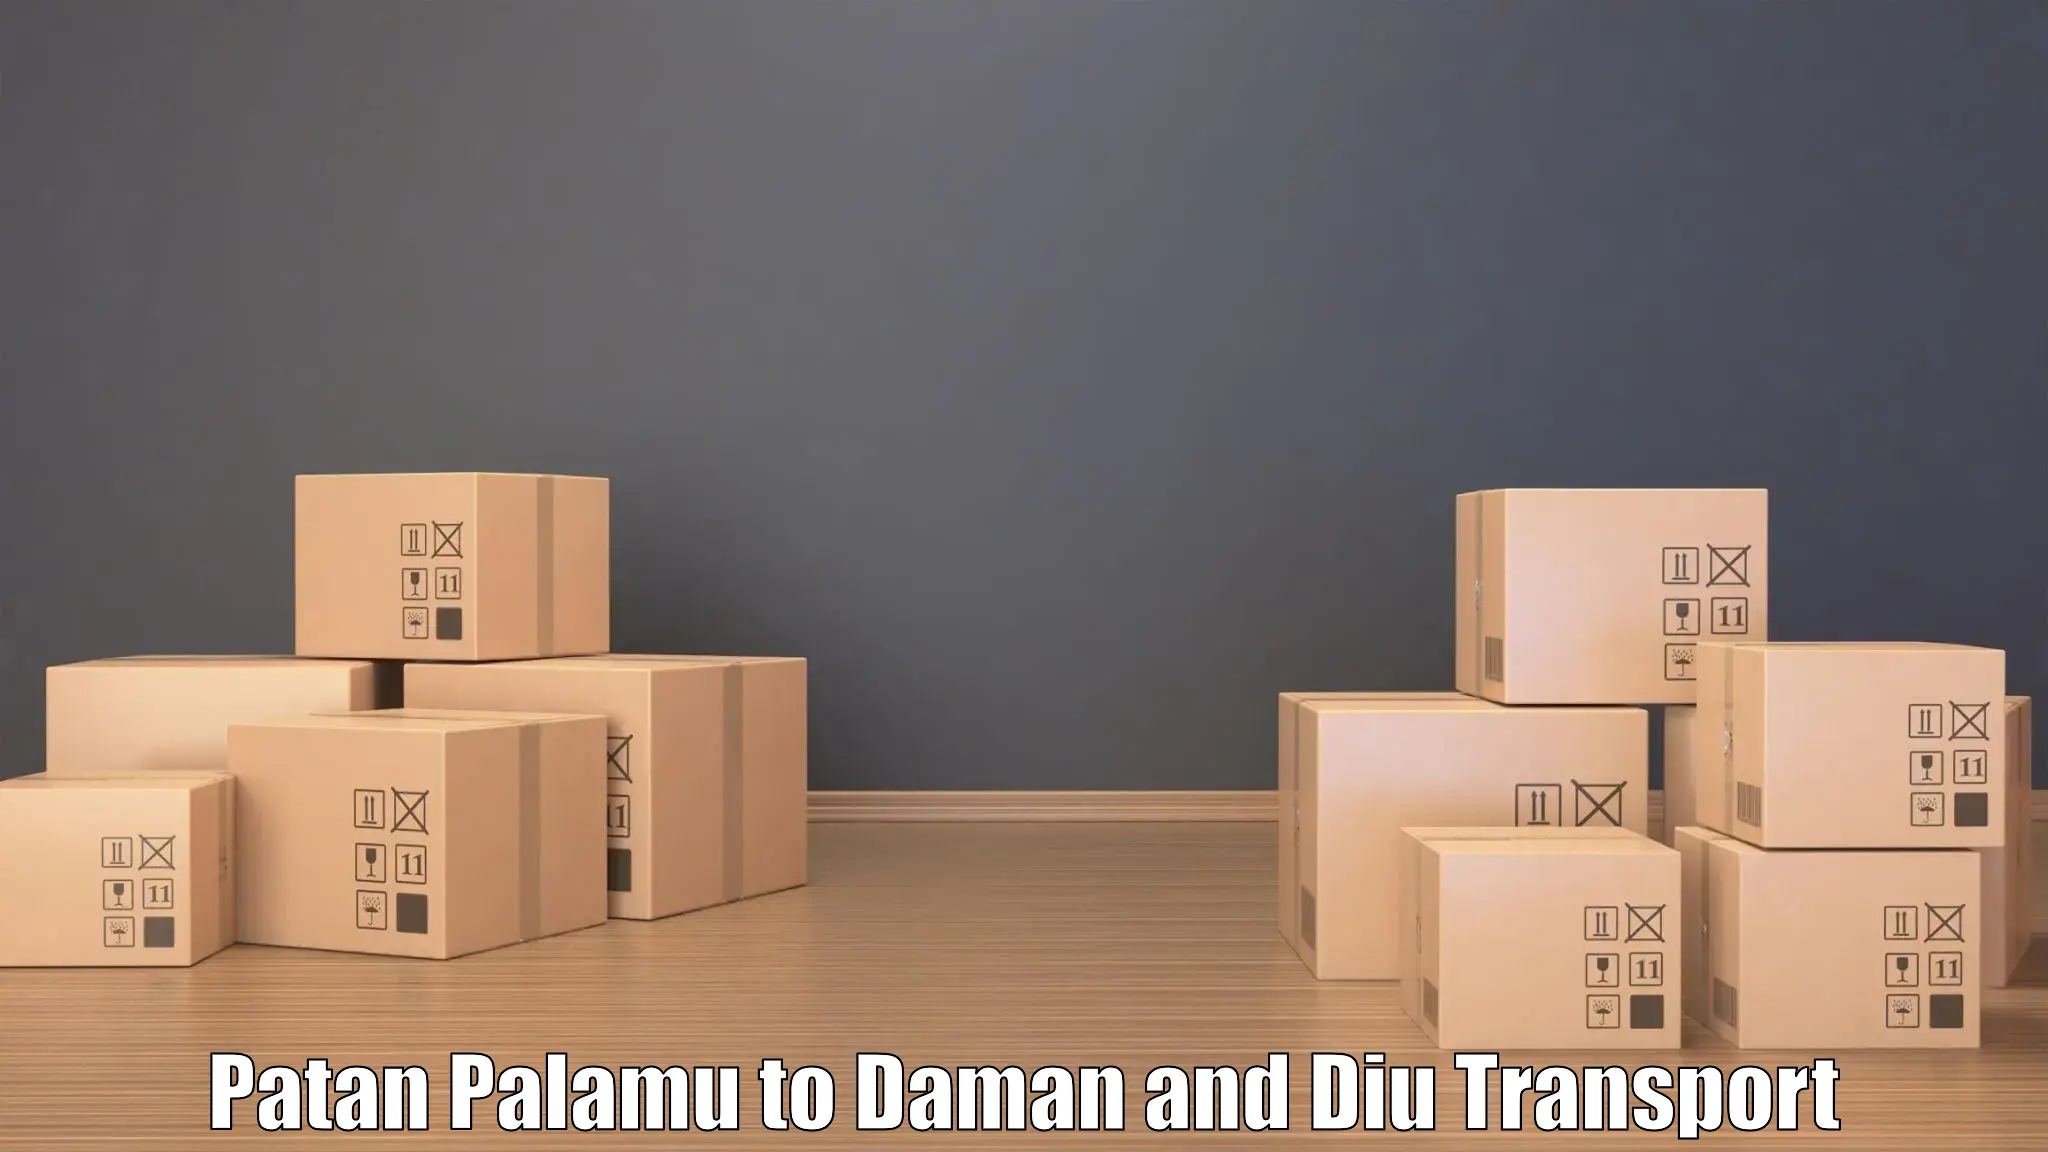 Logistics transportation services Patan Palamu to Daman and Diu